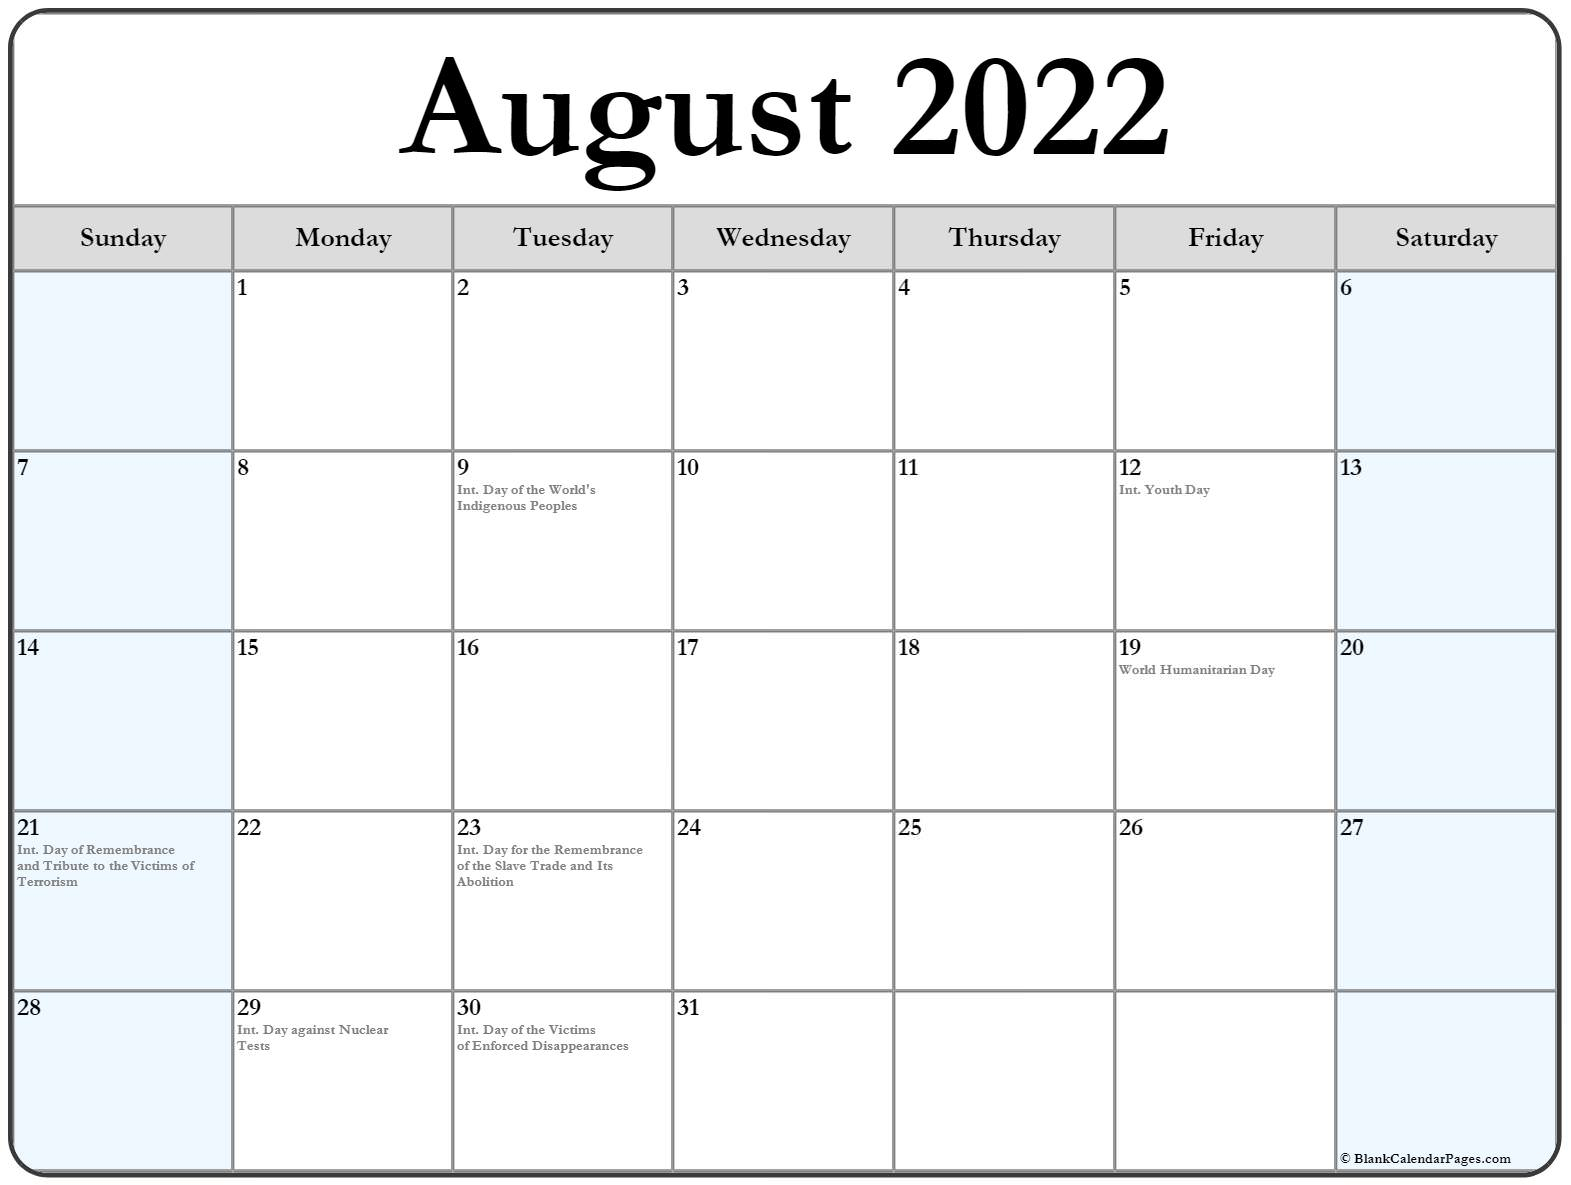 Get August 2022 Indian Calendar